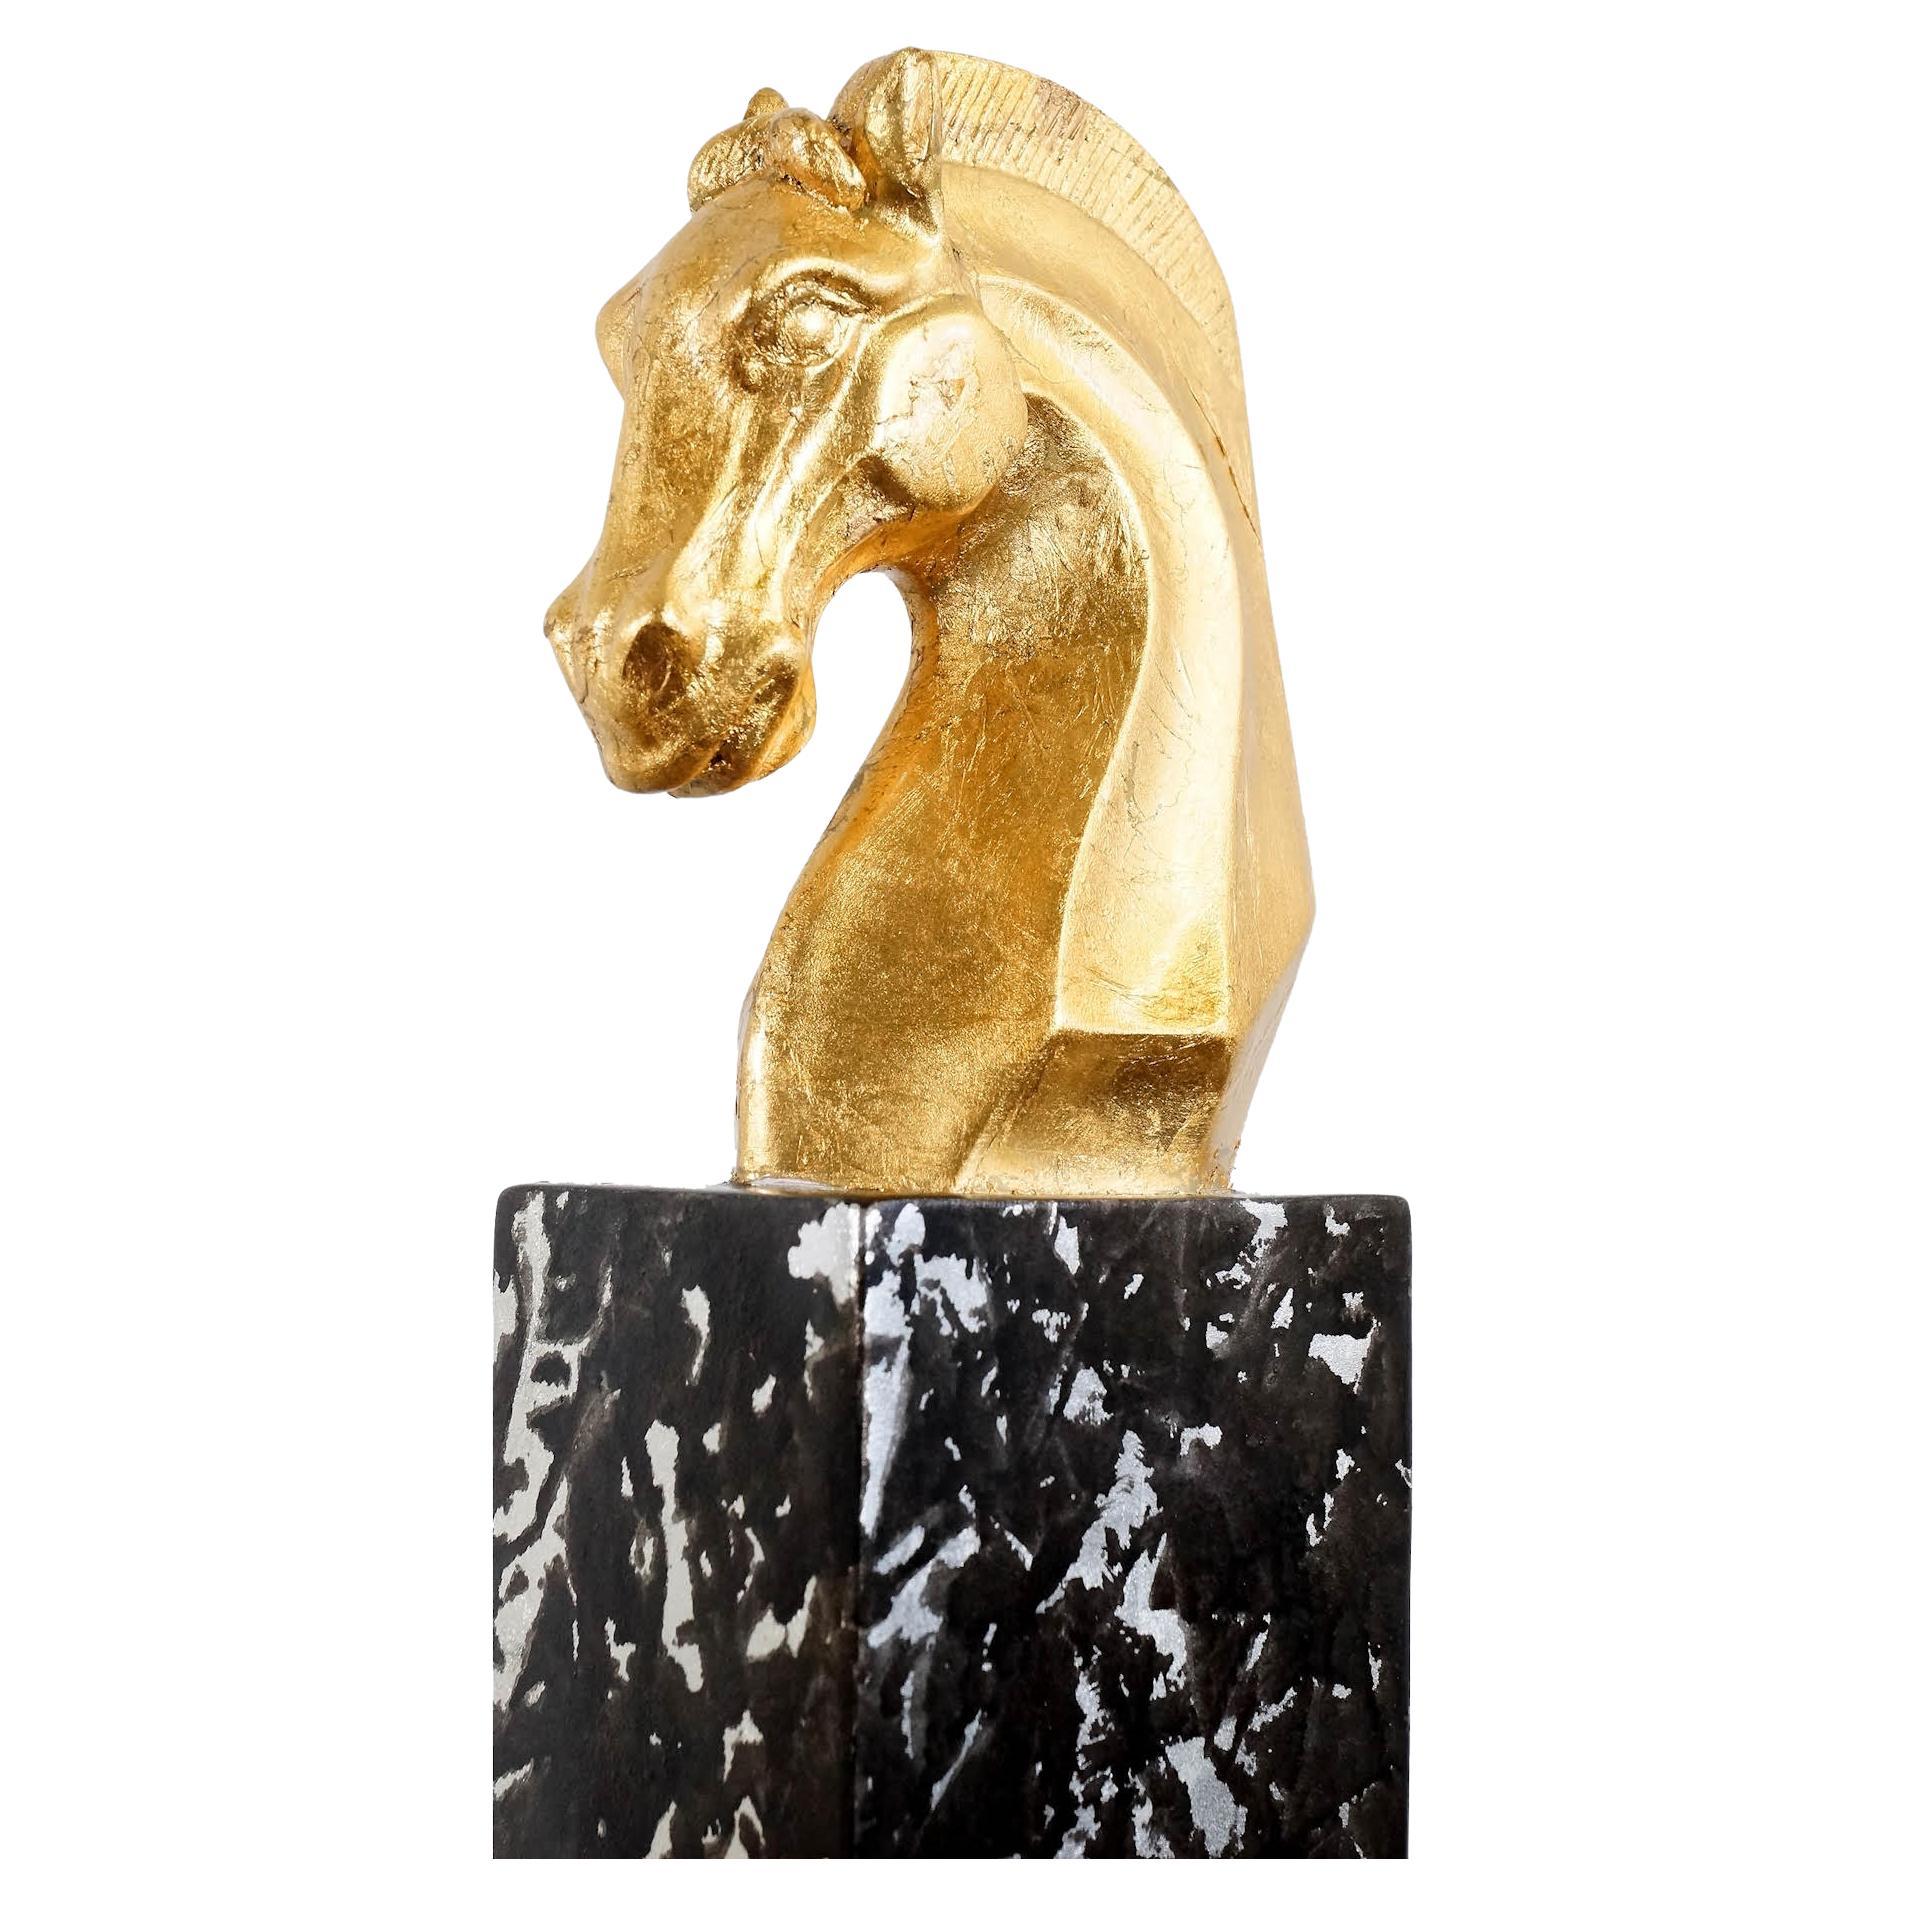 Sculpture de tête de cheval en fibre de verre dorée, œuvre contemporaine, XXIe siècle.